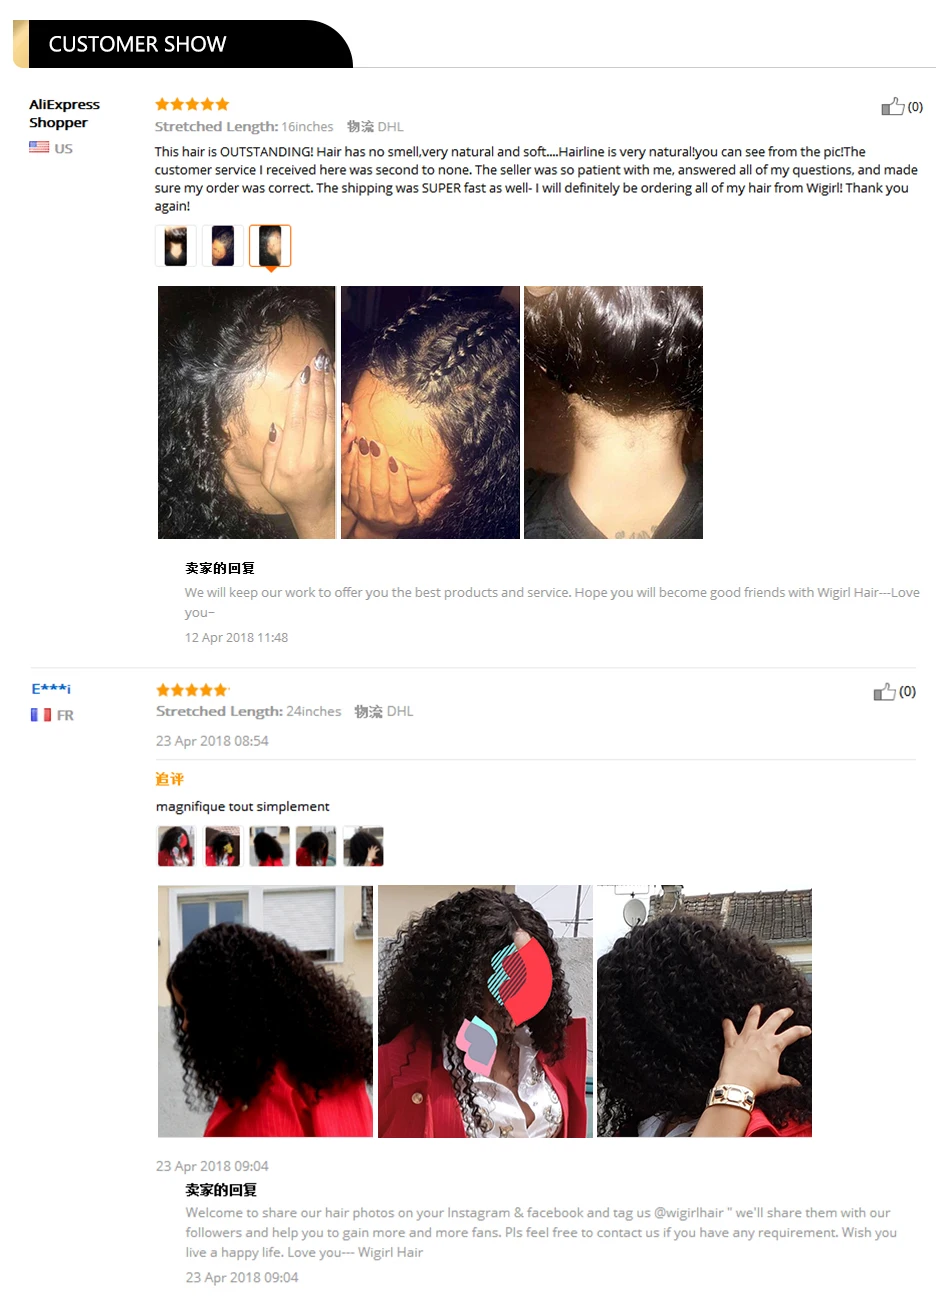 Wigirl, 8-26 дюймов, 360, фронтальный парик на шнурке, 250 плотность, человеческие волосы, парики для черных женщин, кудрявые человеческие волосы, парик